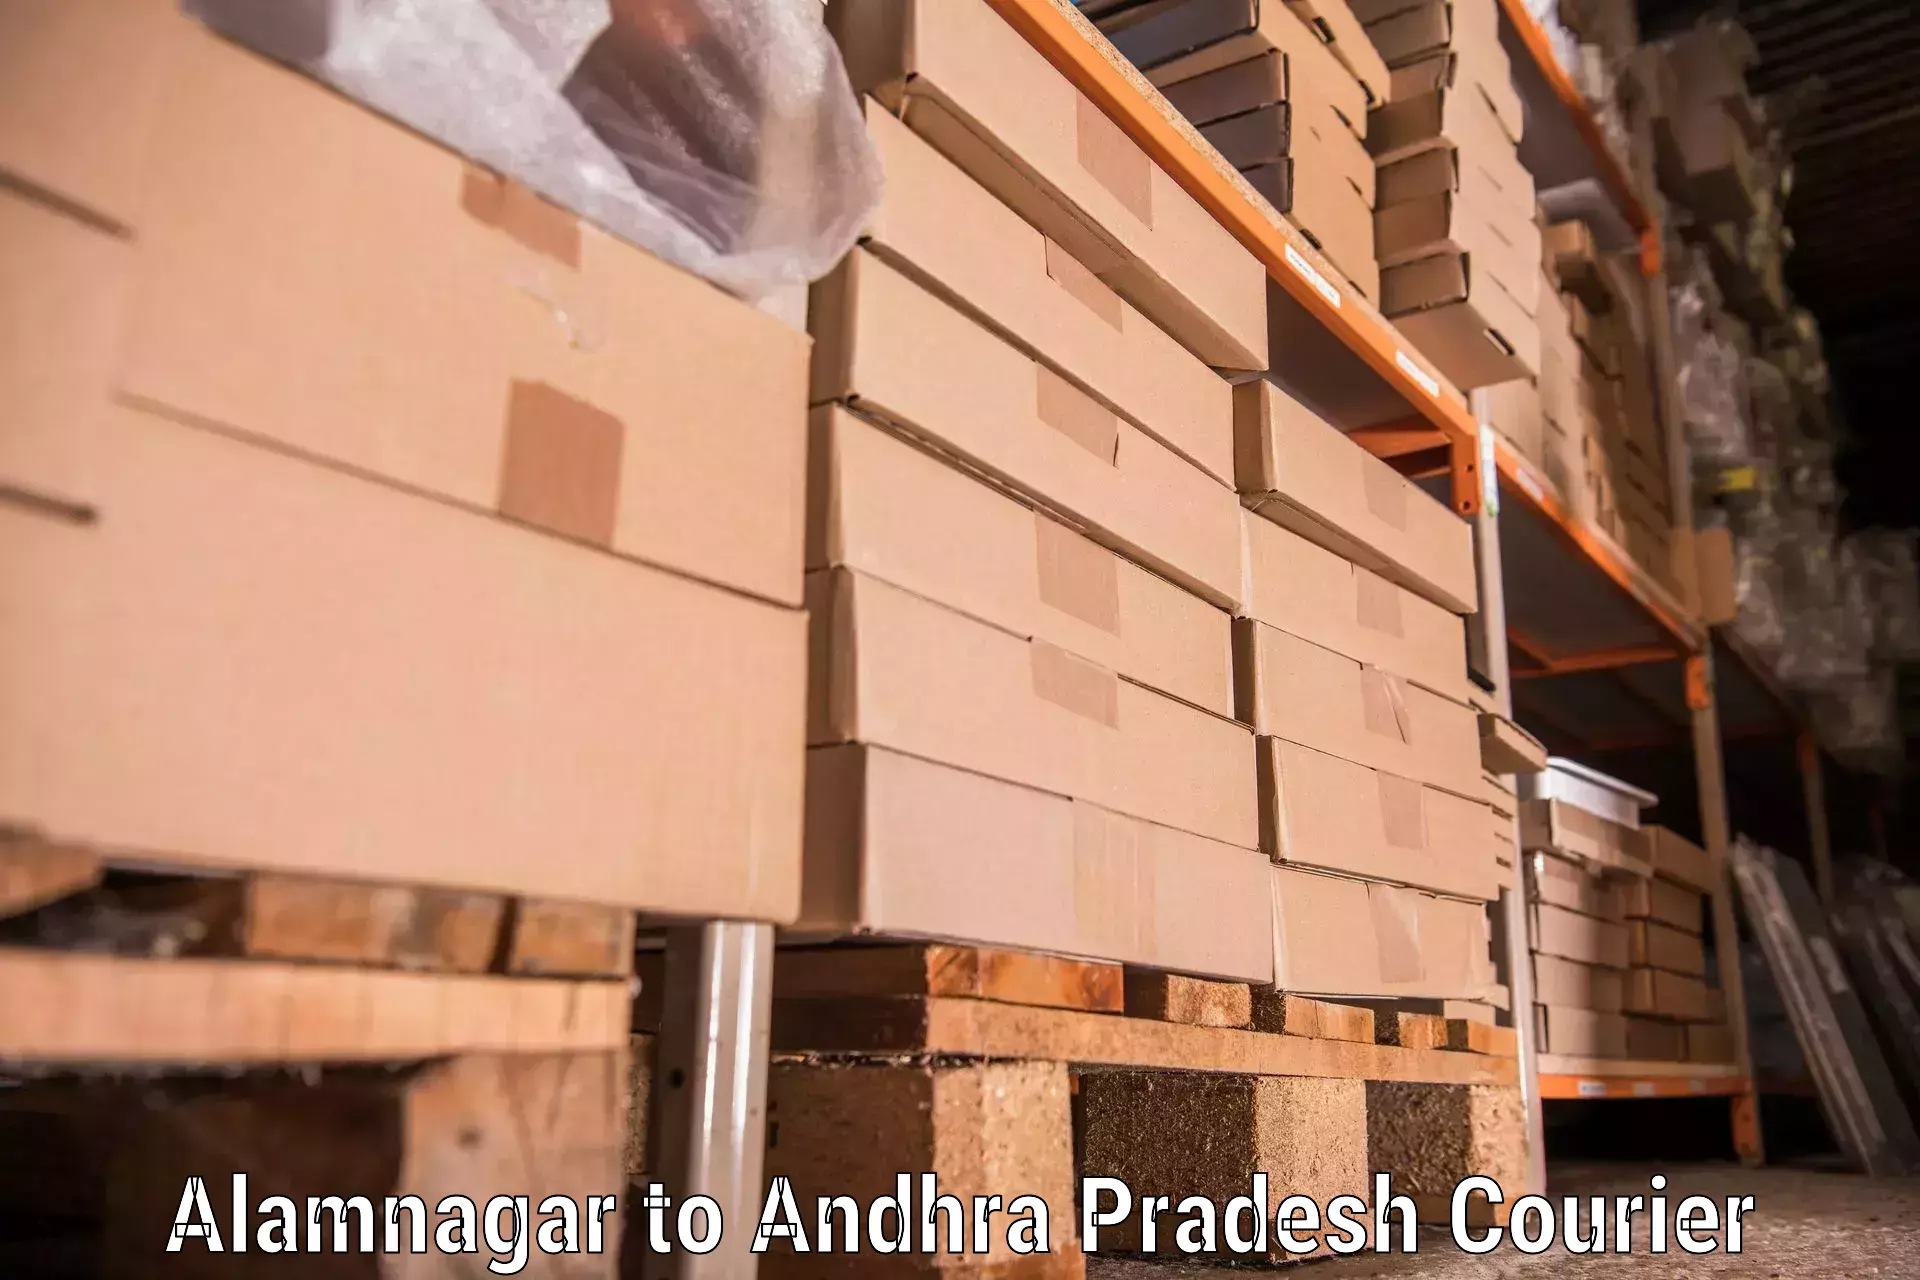 Trusted moving company in Alamnagar to Amalapuram